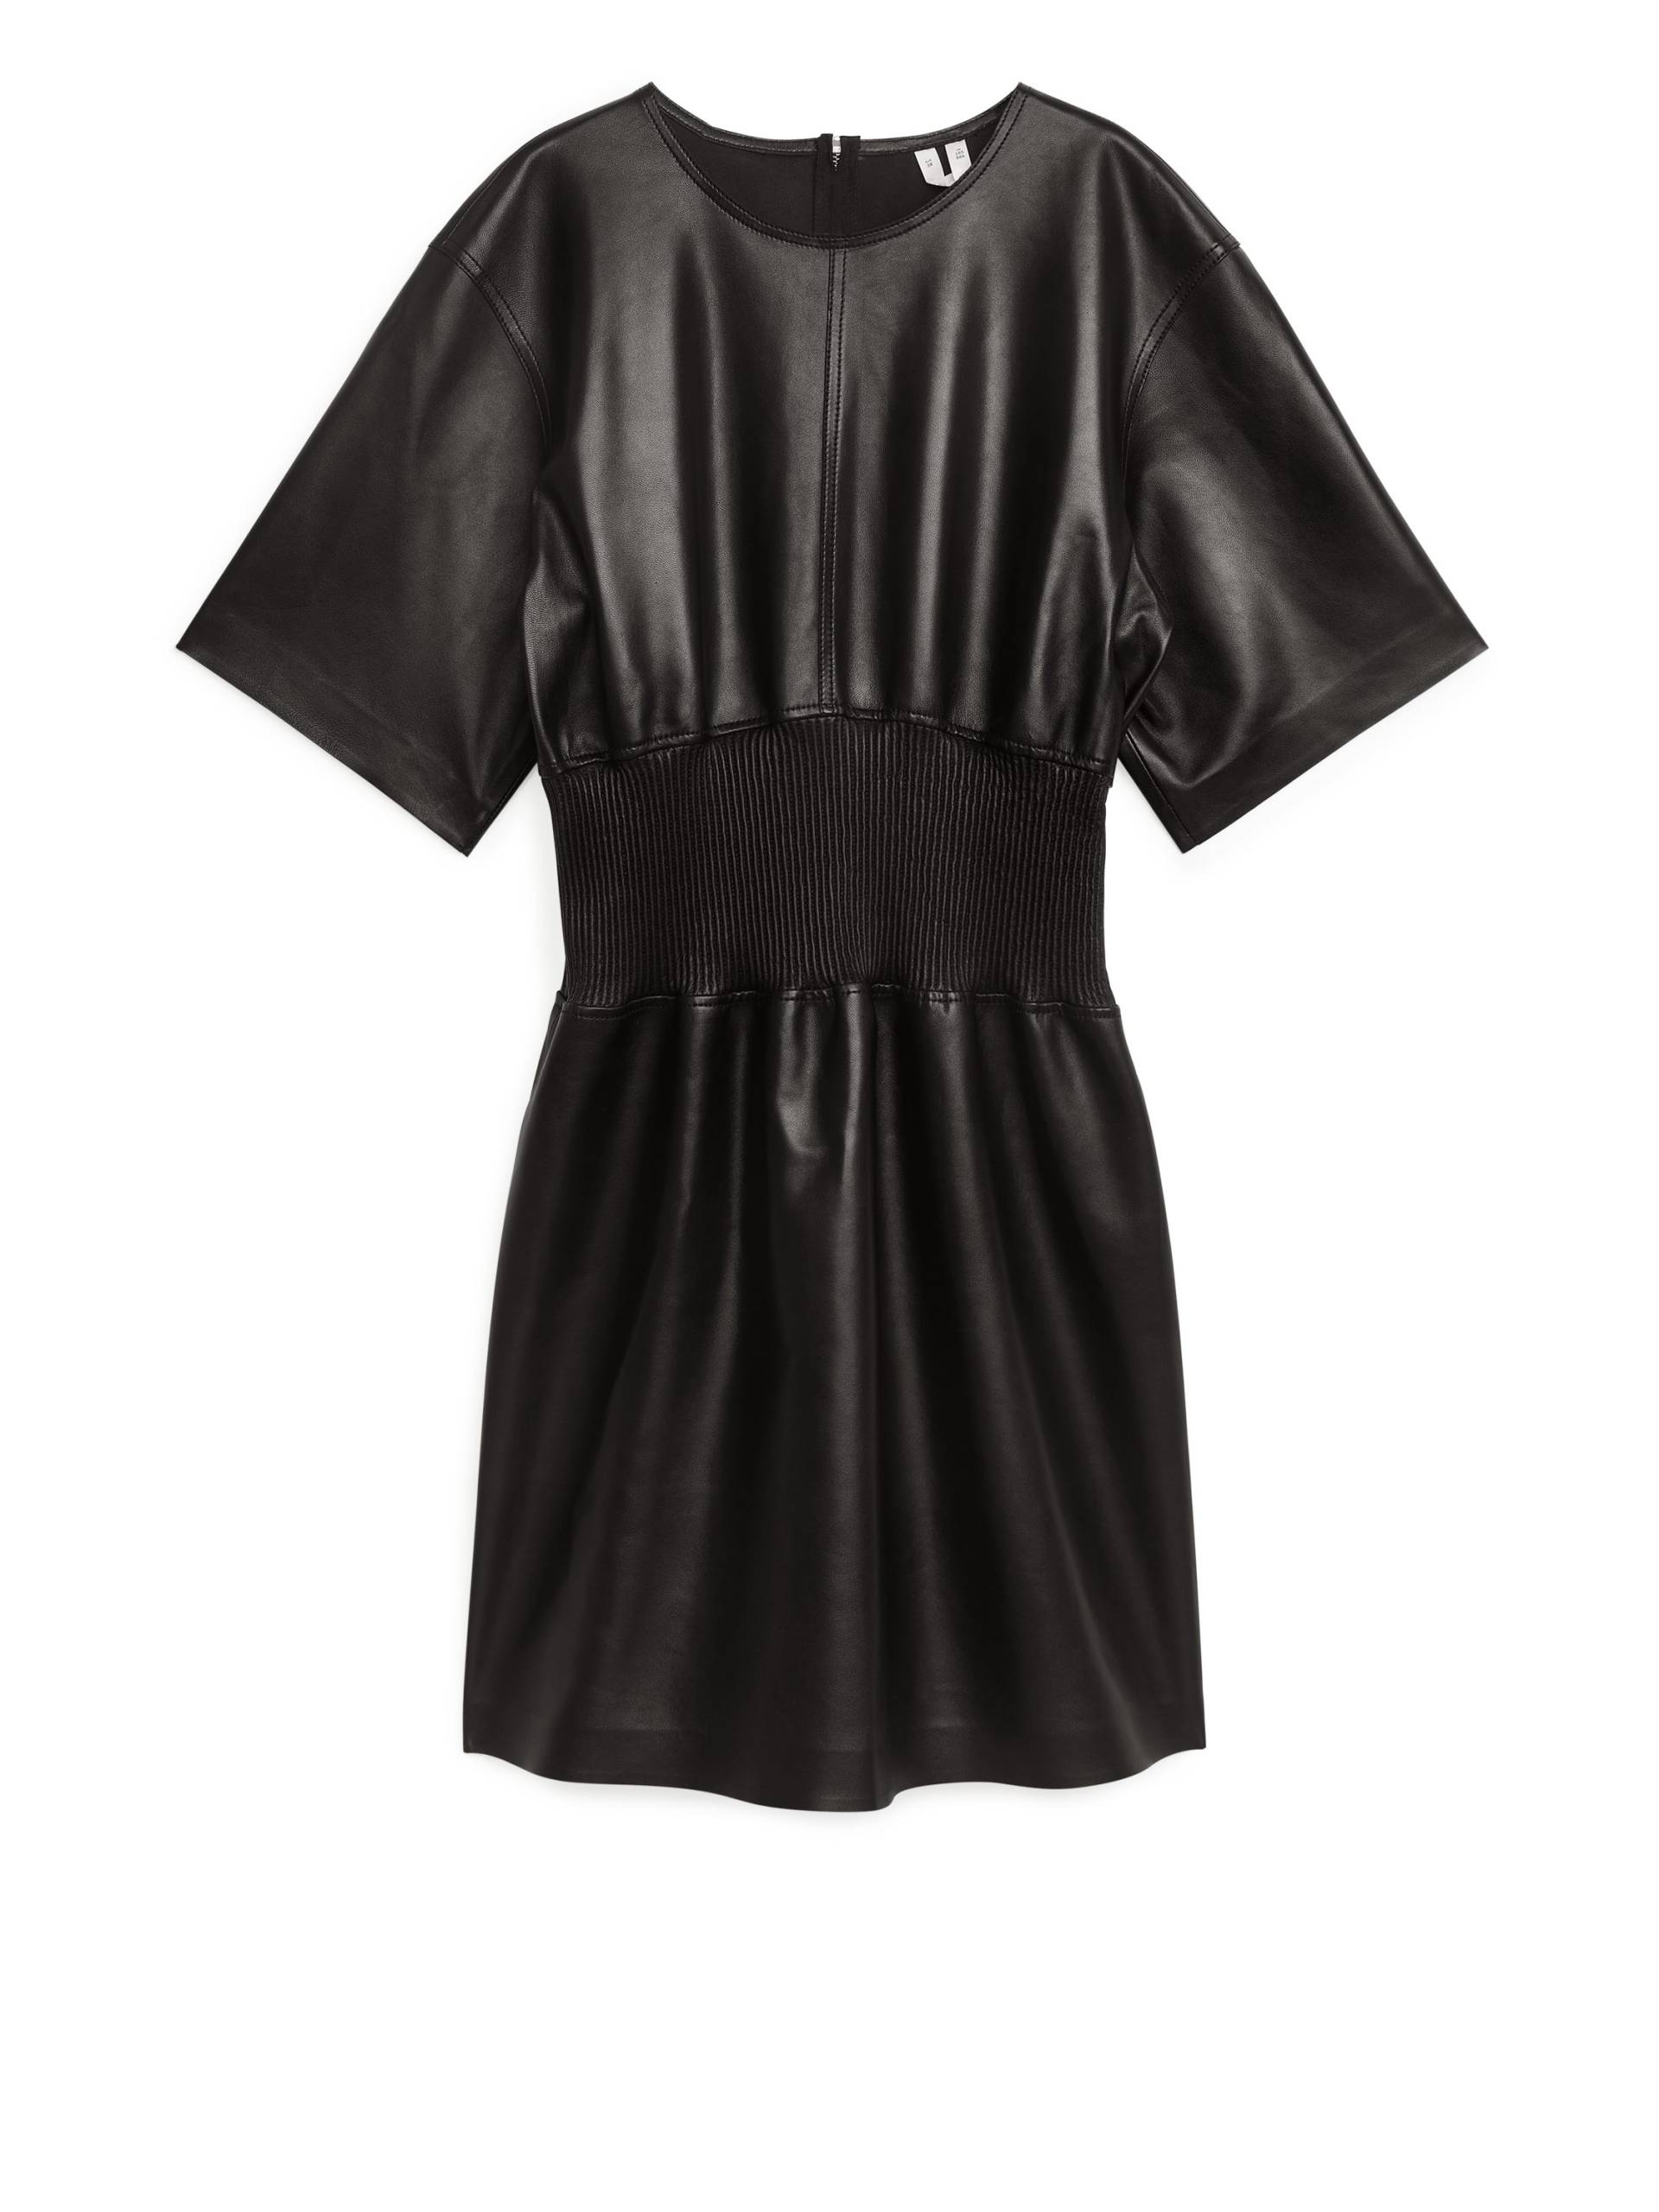 Arket Lederkleid mit gerippter Taille Schwarz, Alltagskleider in Größe 34. Farbe: Black von Arket